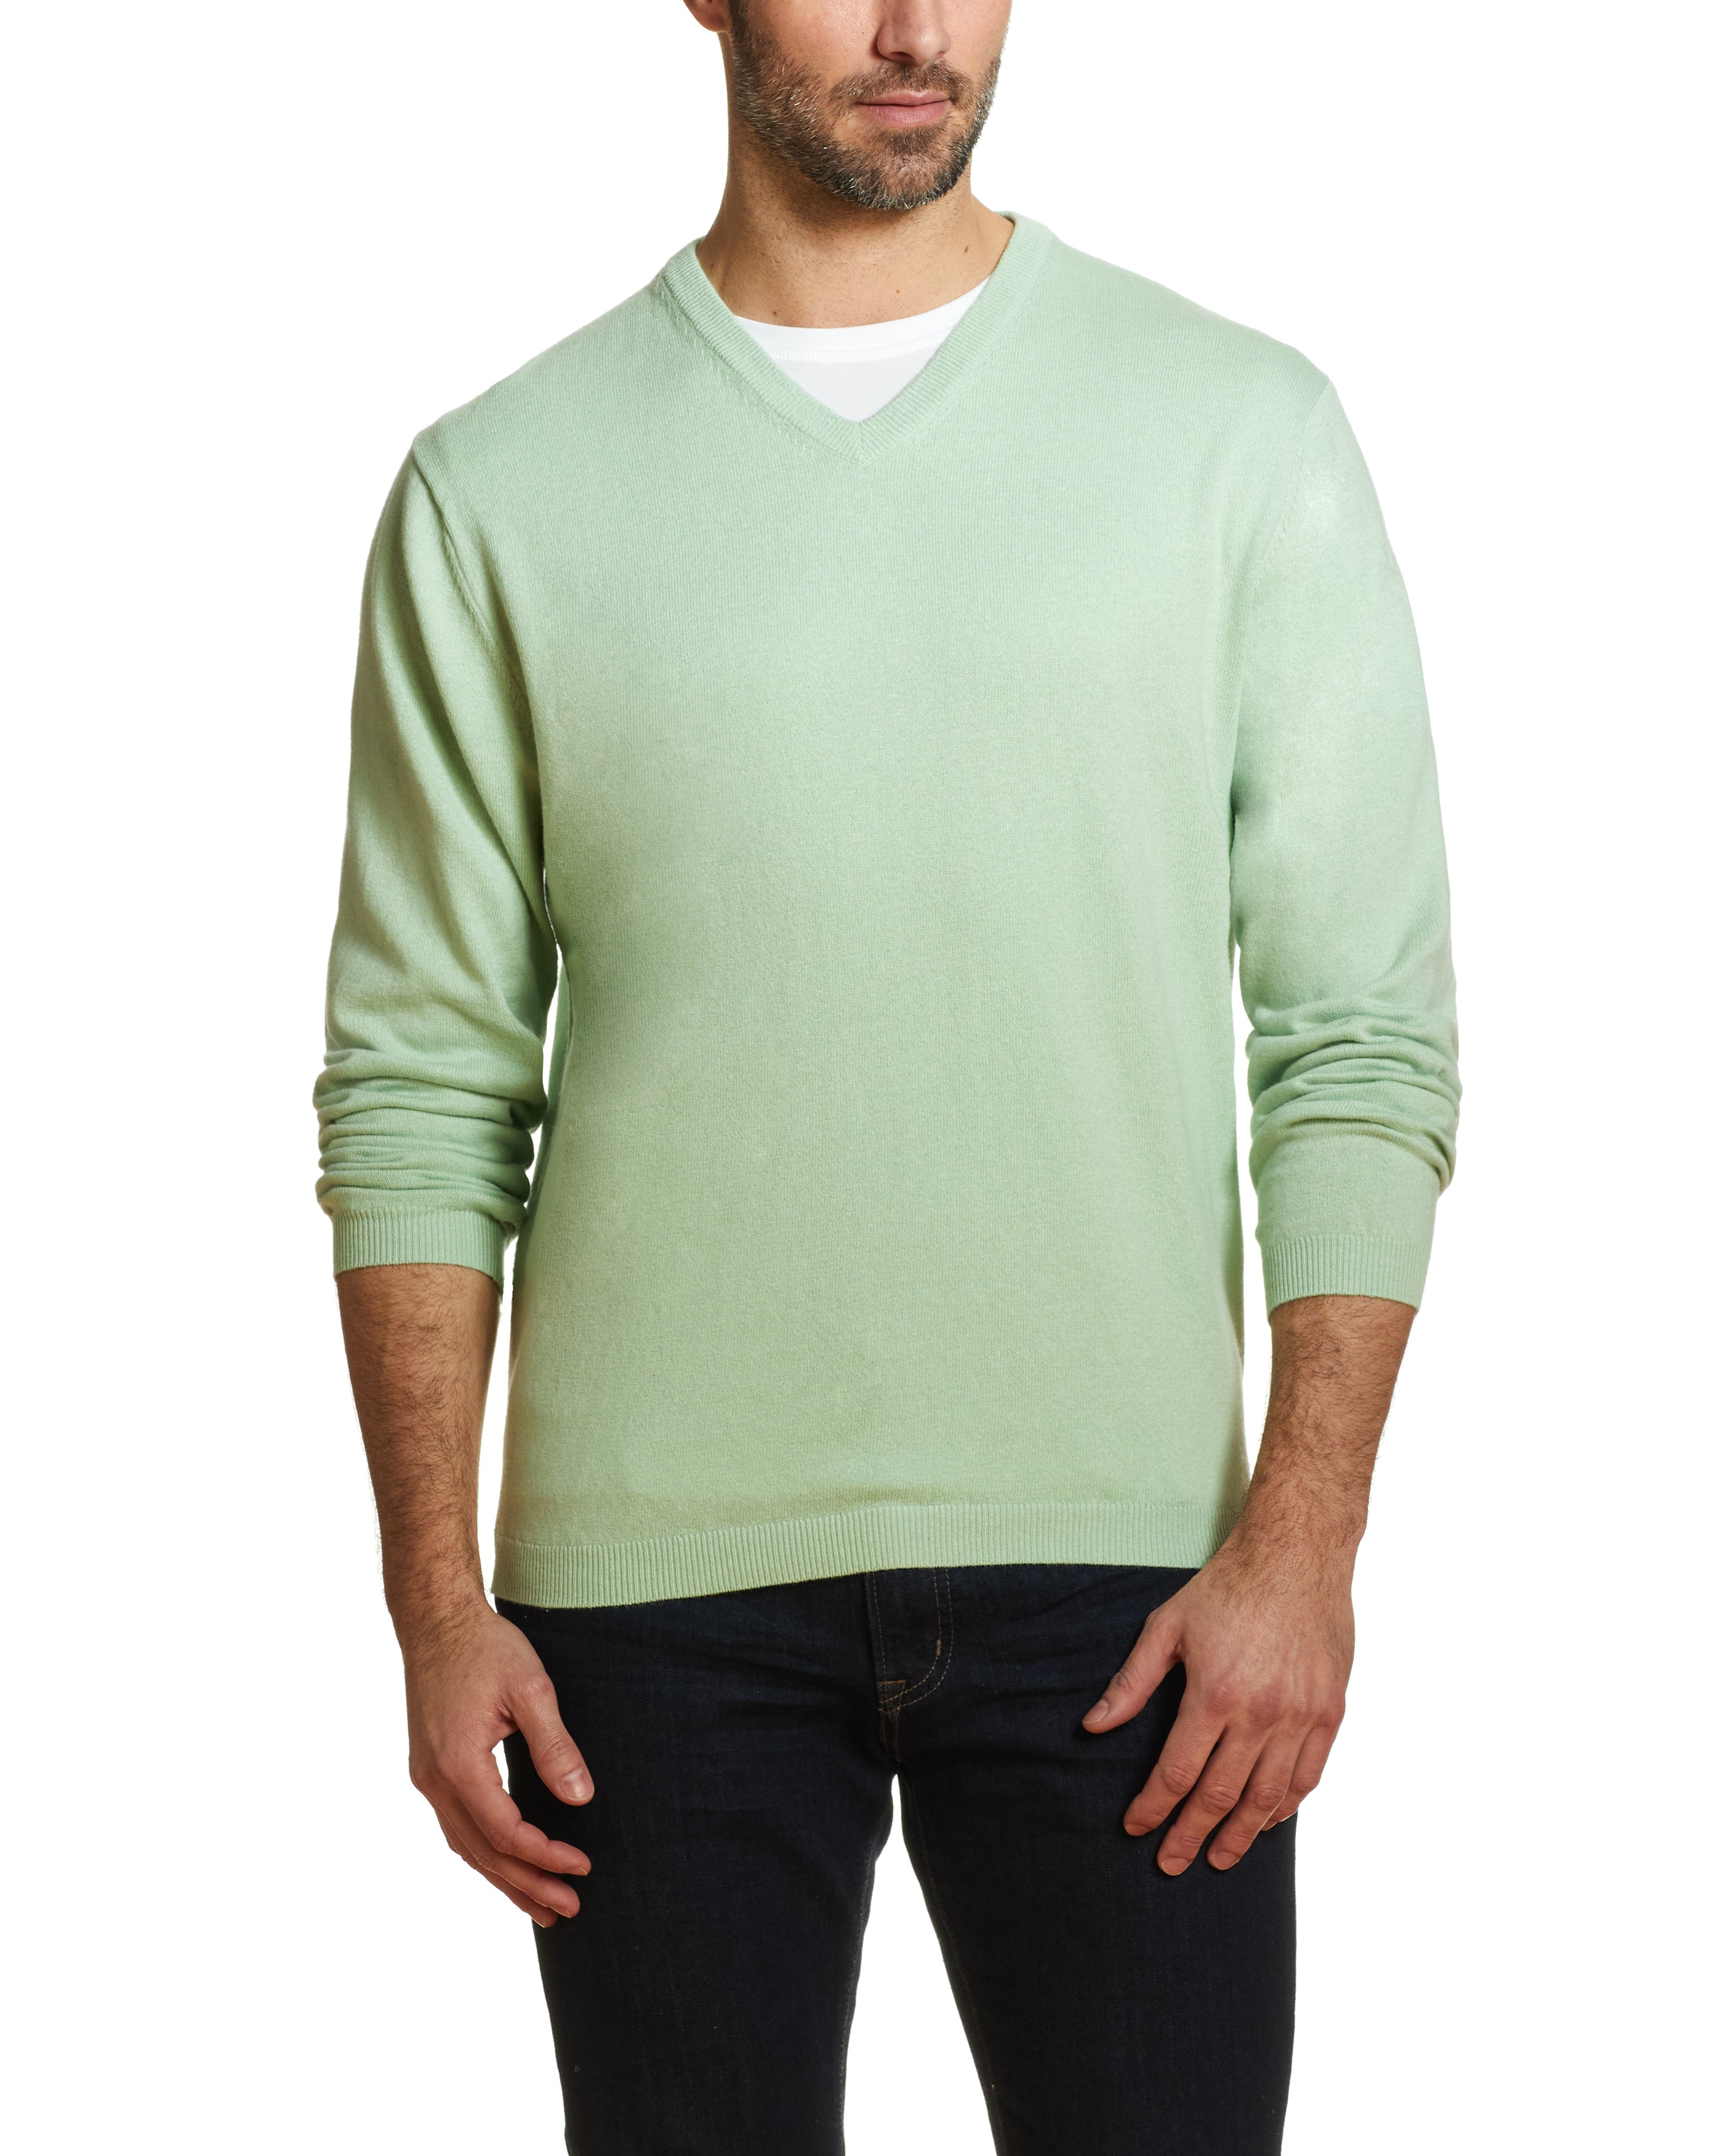 Cotton Cashmere V Neck Sweater in Seafoam